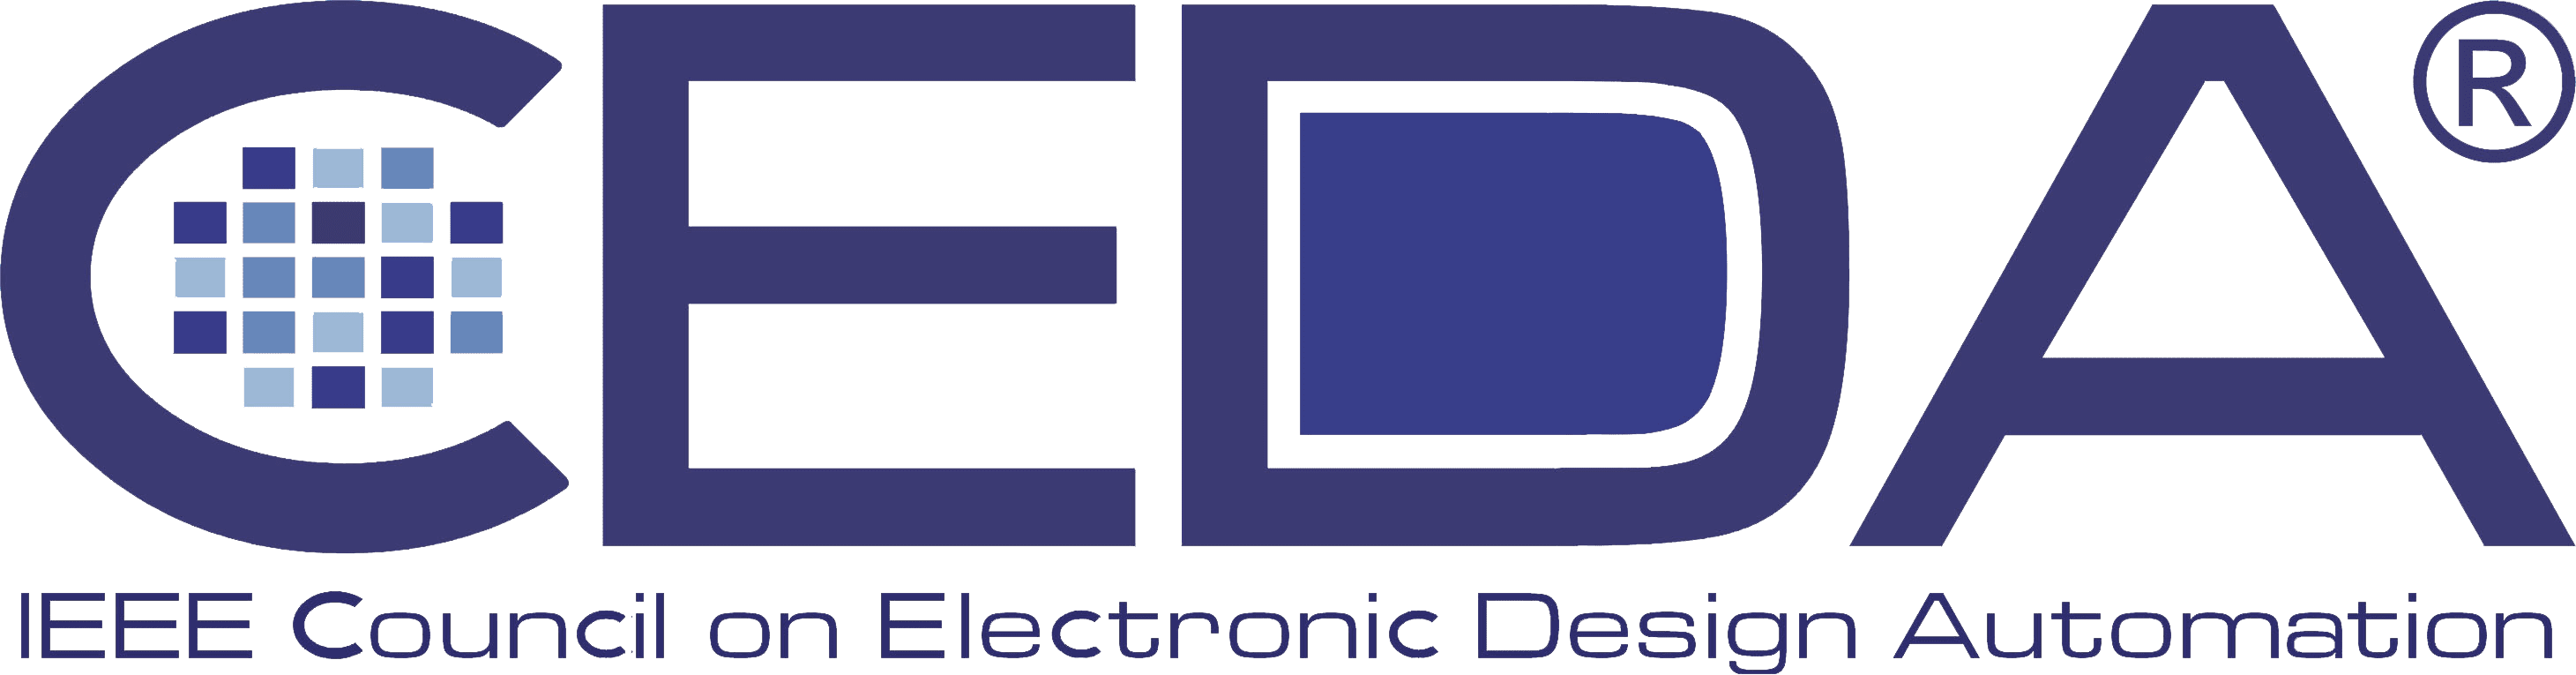 Eda данных. Ceda логотип. IEEE logo. Soji Electronics. IEEE Computer Society logo.